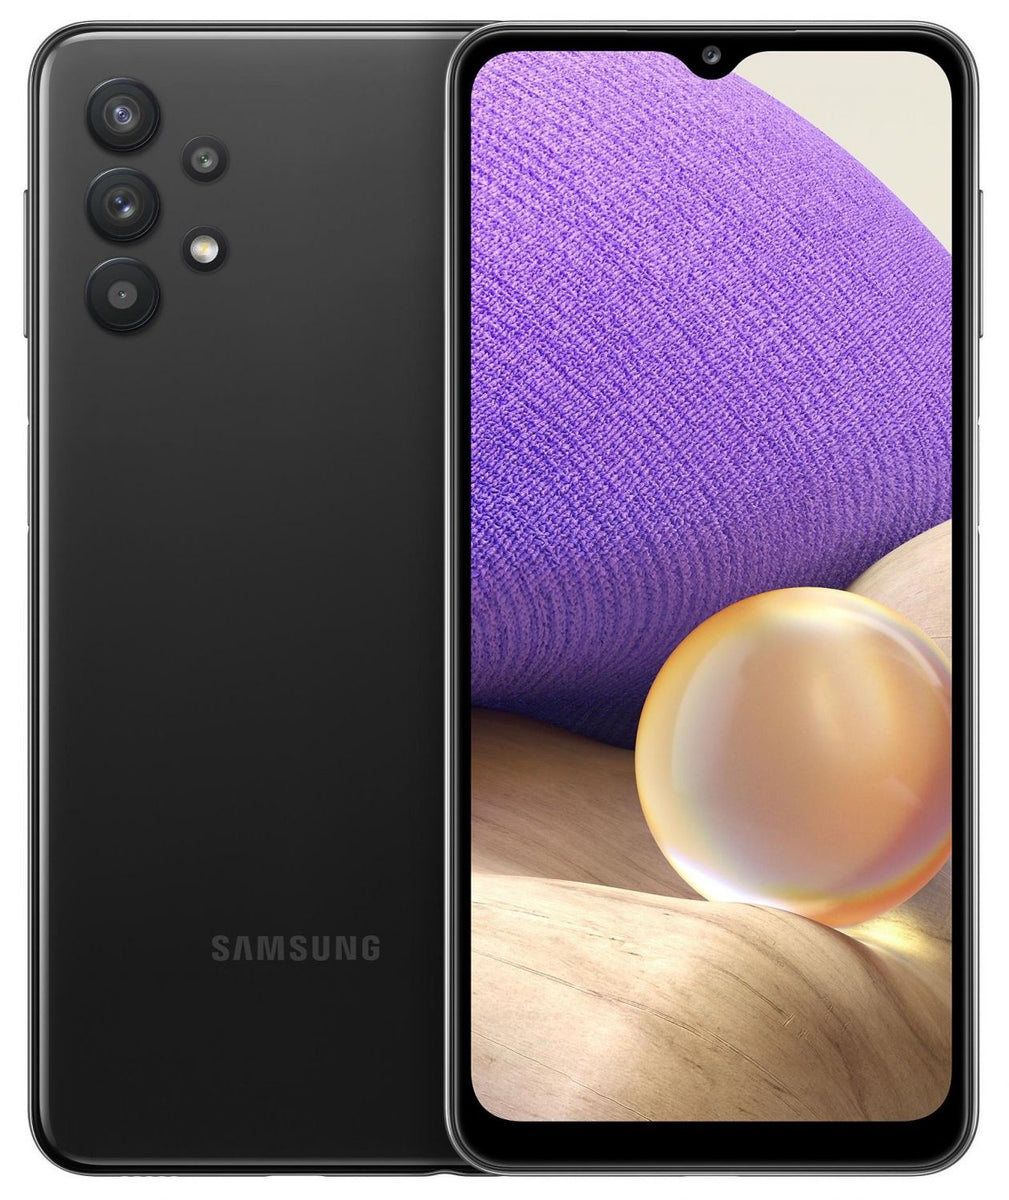 OFERTA DO DIA  Smartphone Samsung Galaxy A32 5G por R$ 1262,55 no